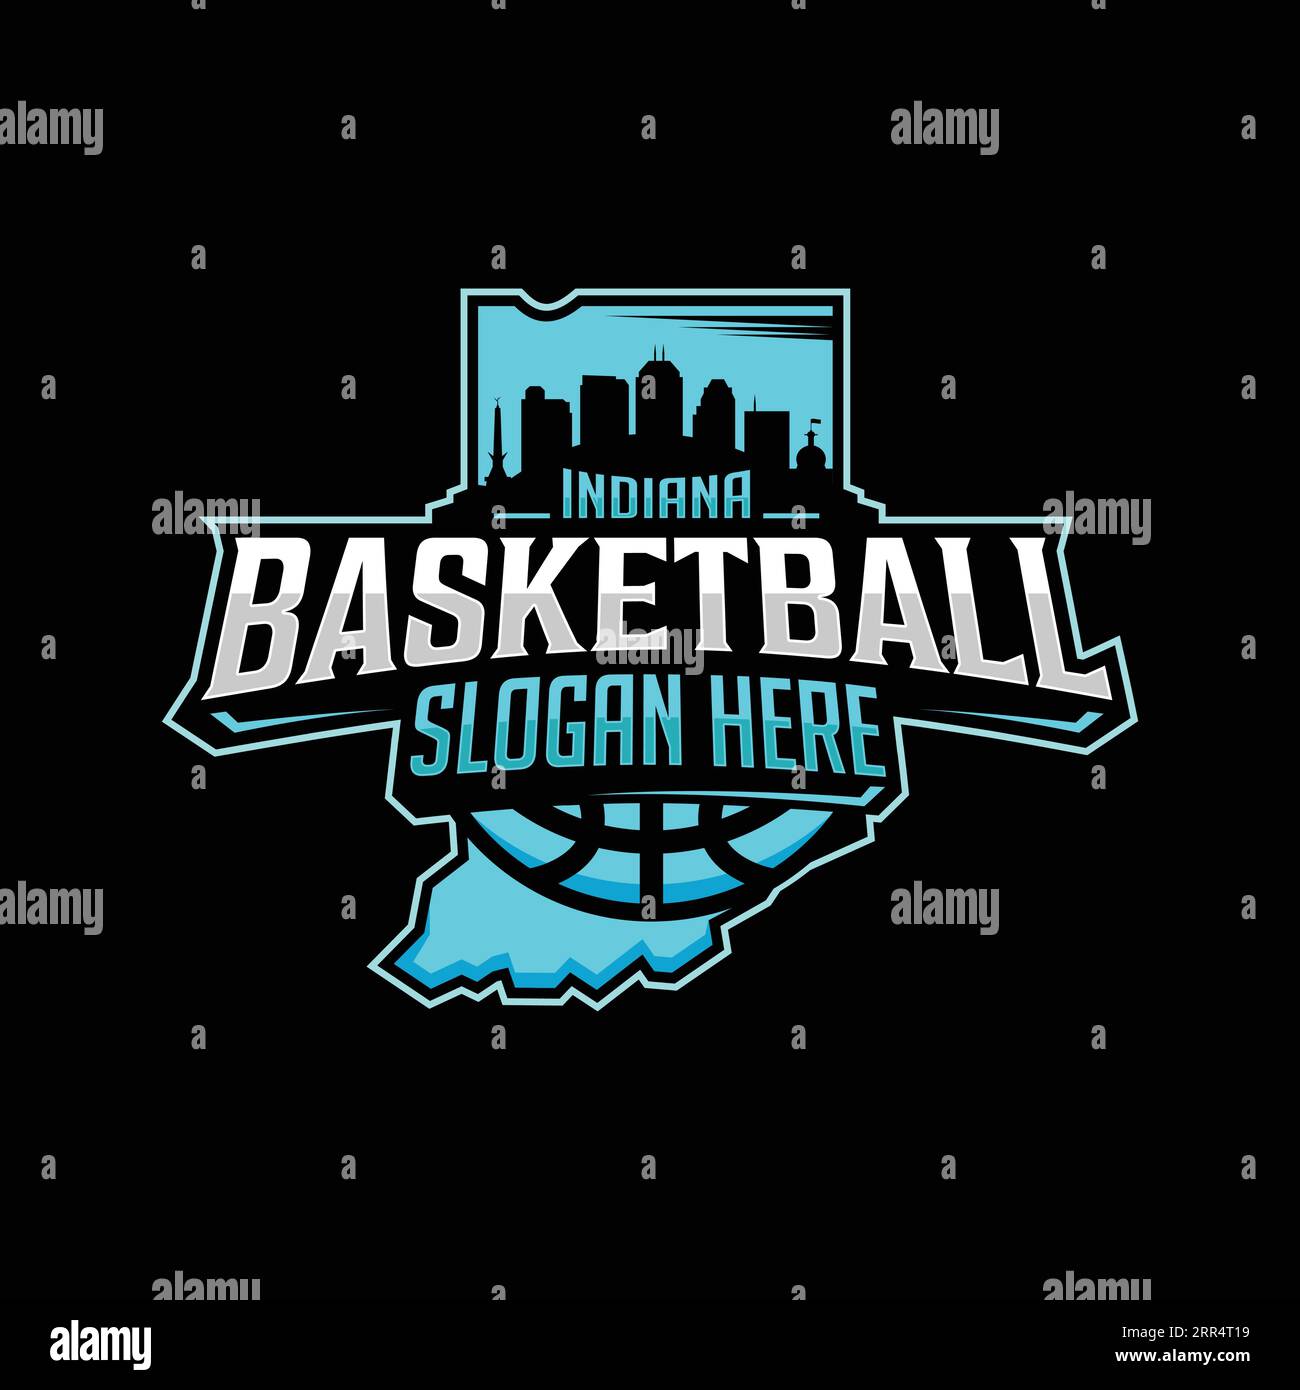 Emblème du logo de l'équipe Indiana Basketball dans un style moderne avec fond noir. Illustration vectorielle Illustration de Vecteur